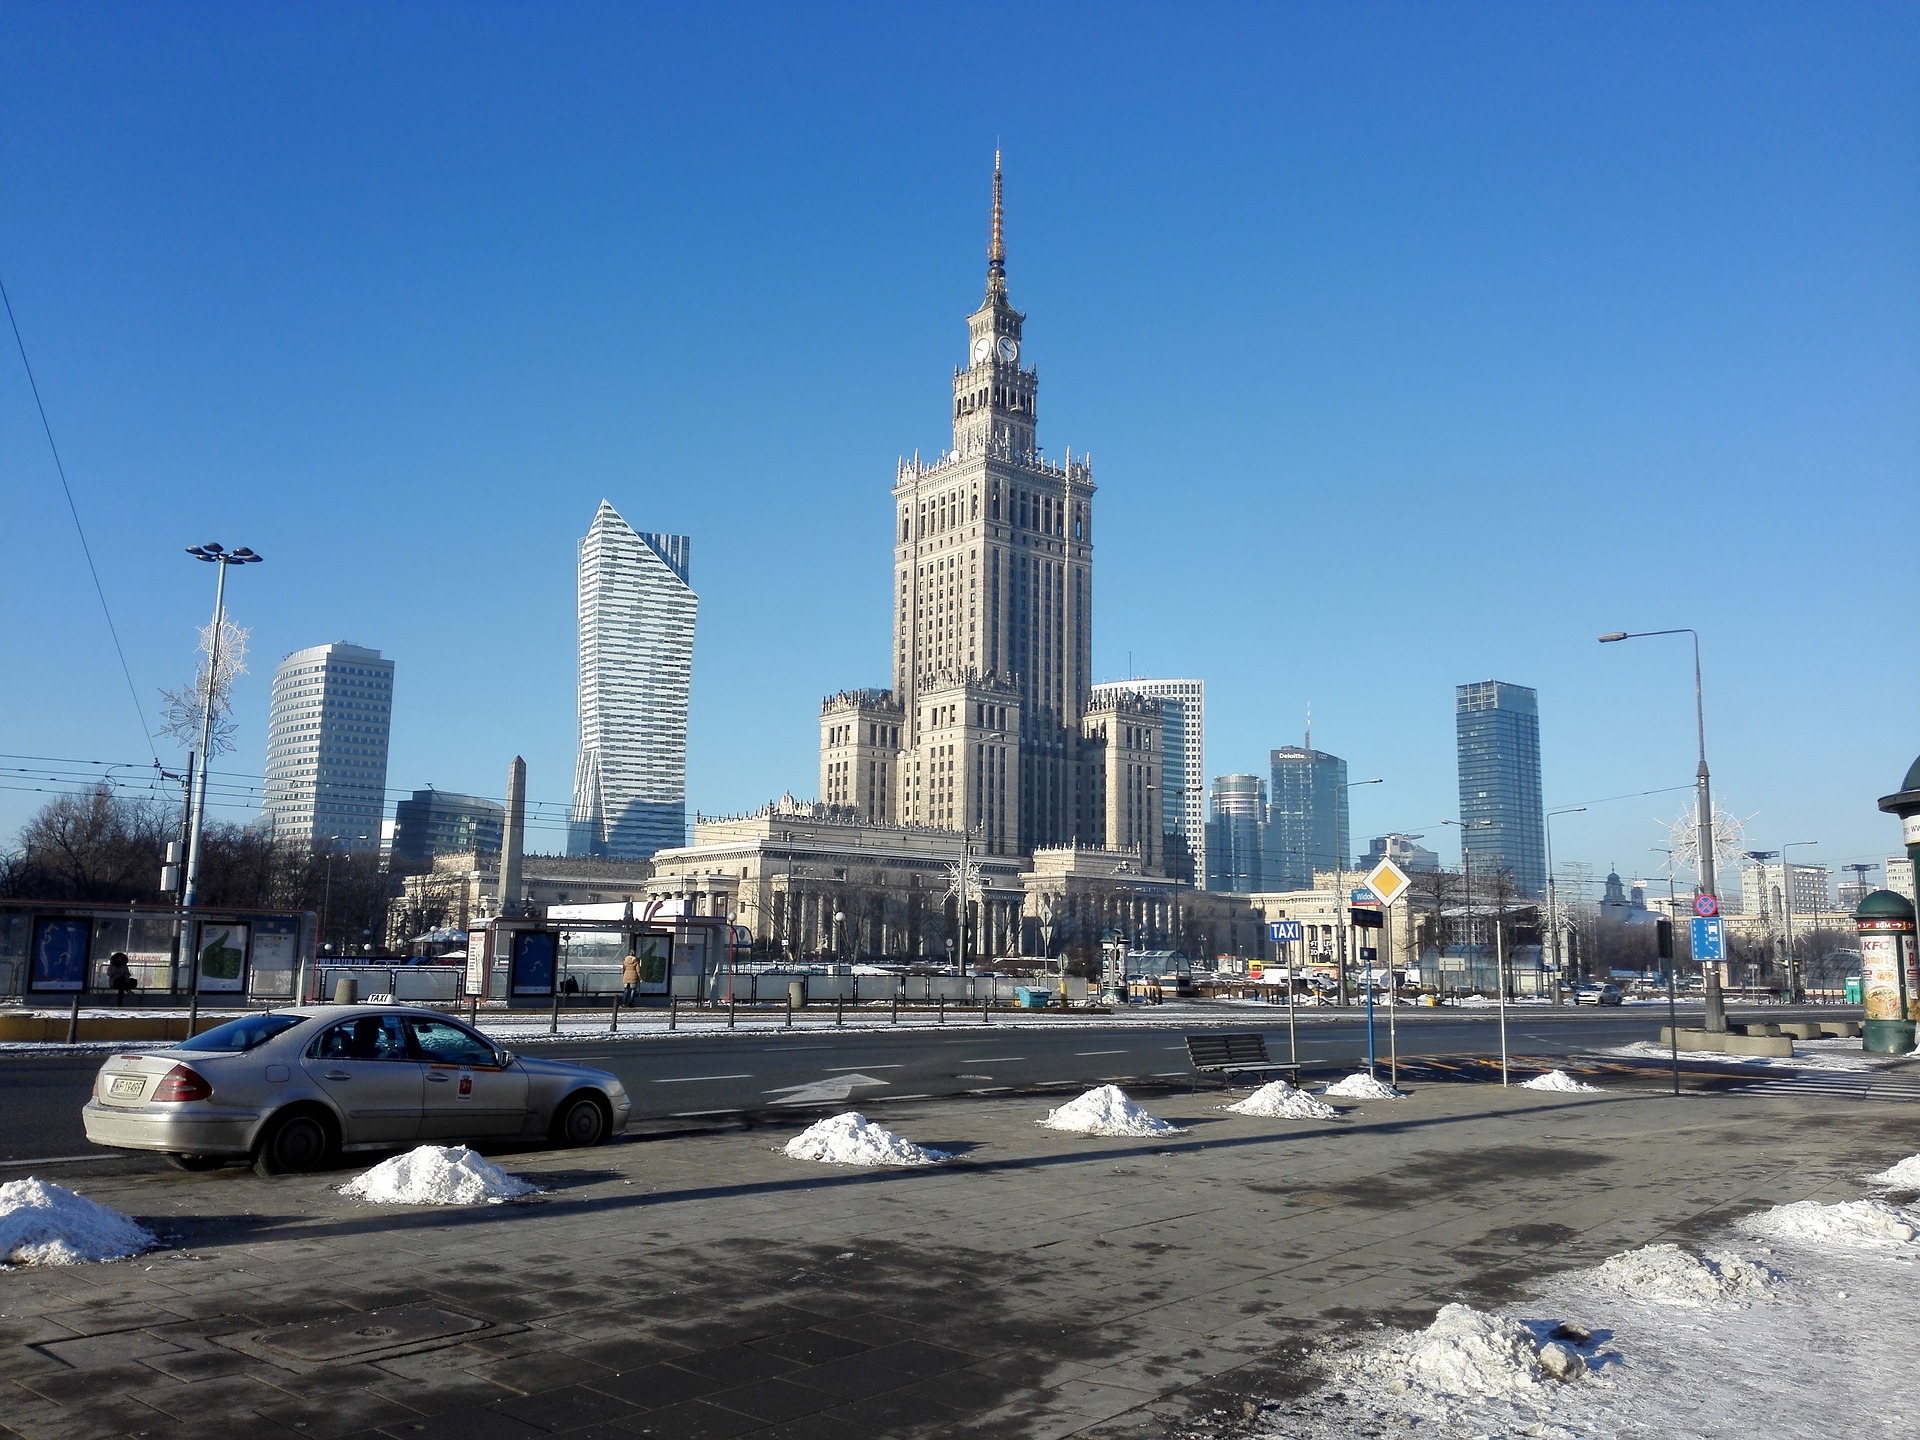 Palác kultury a vědy: Architektonický velikán Varšavy